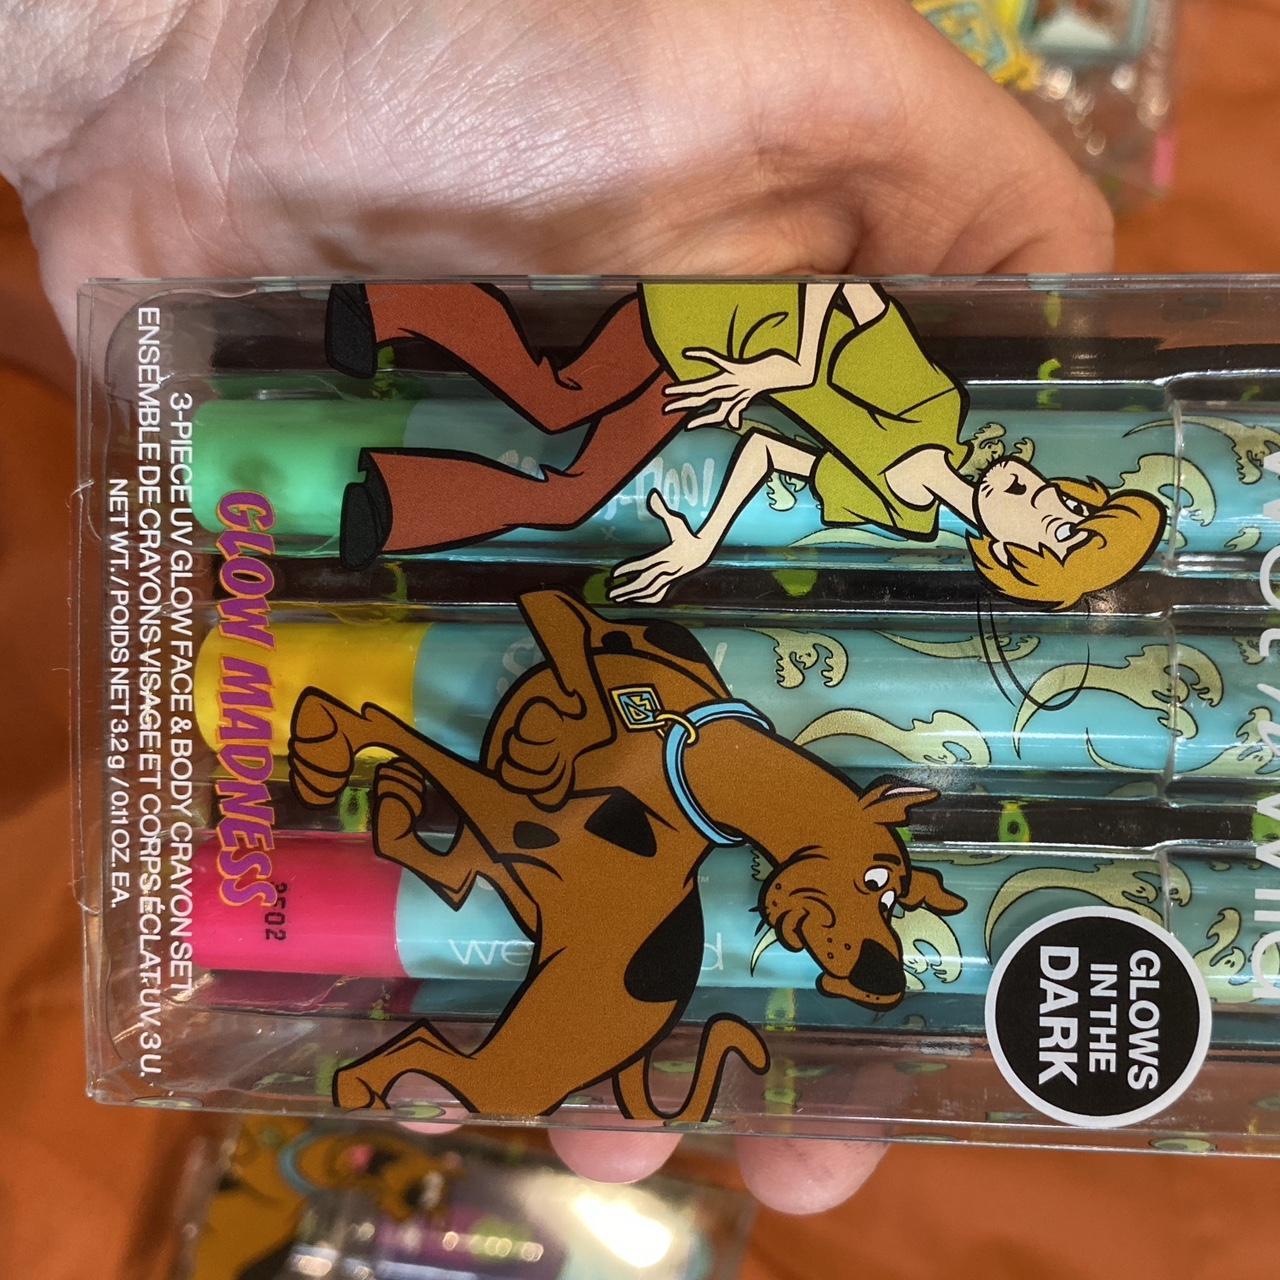 Buy Wet n Wild x Scooby Doo Glow Madness 3 Piece UV Glow Face